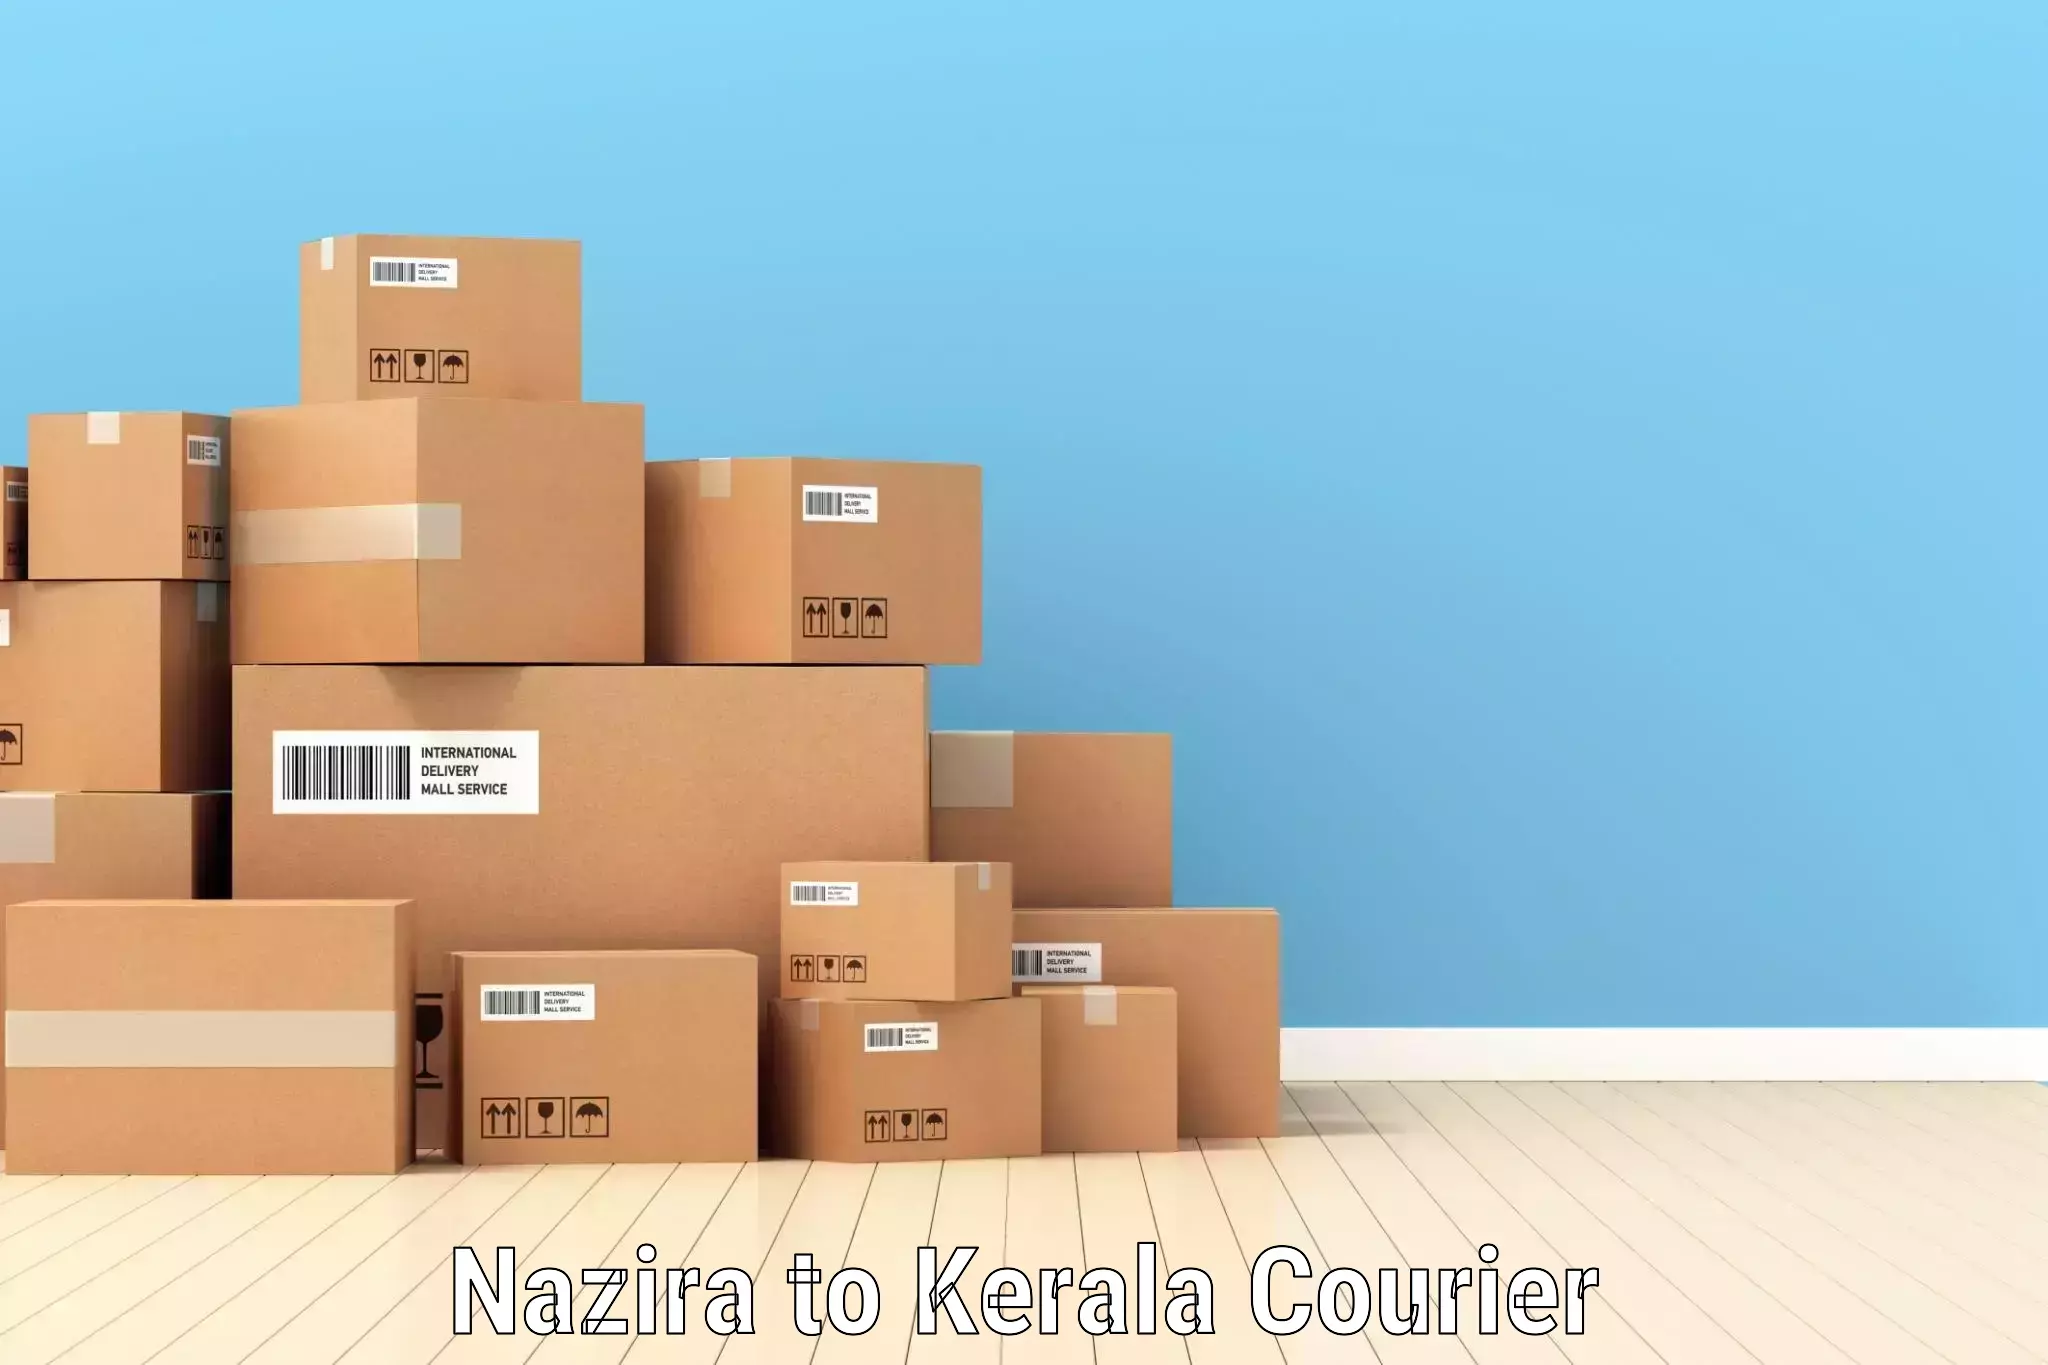 Package tracking Nazira to Kuchi